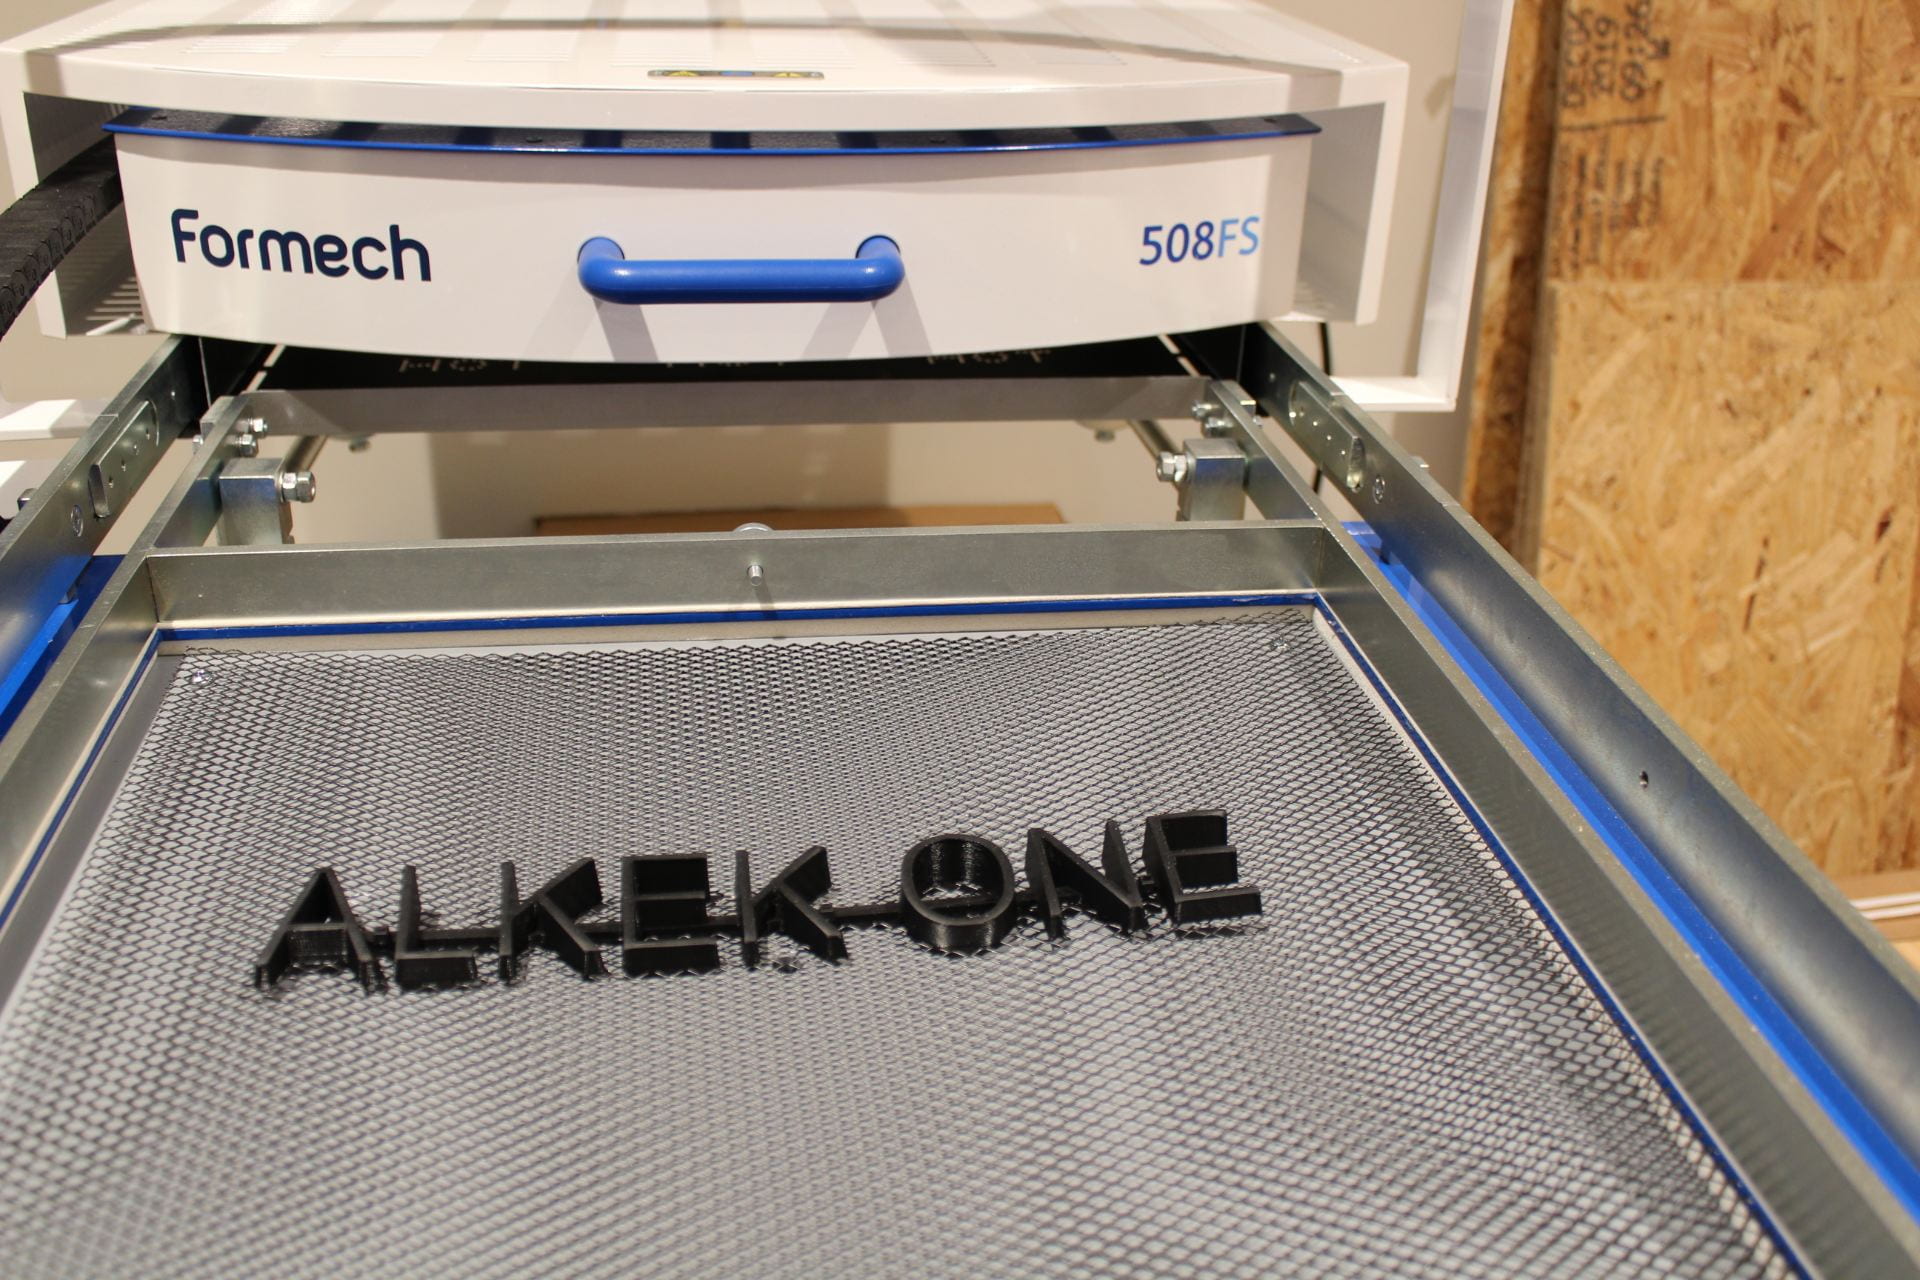 Alkek One printed using form printer in MakerSpace